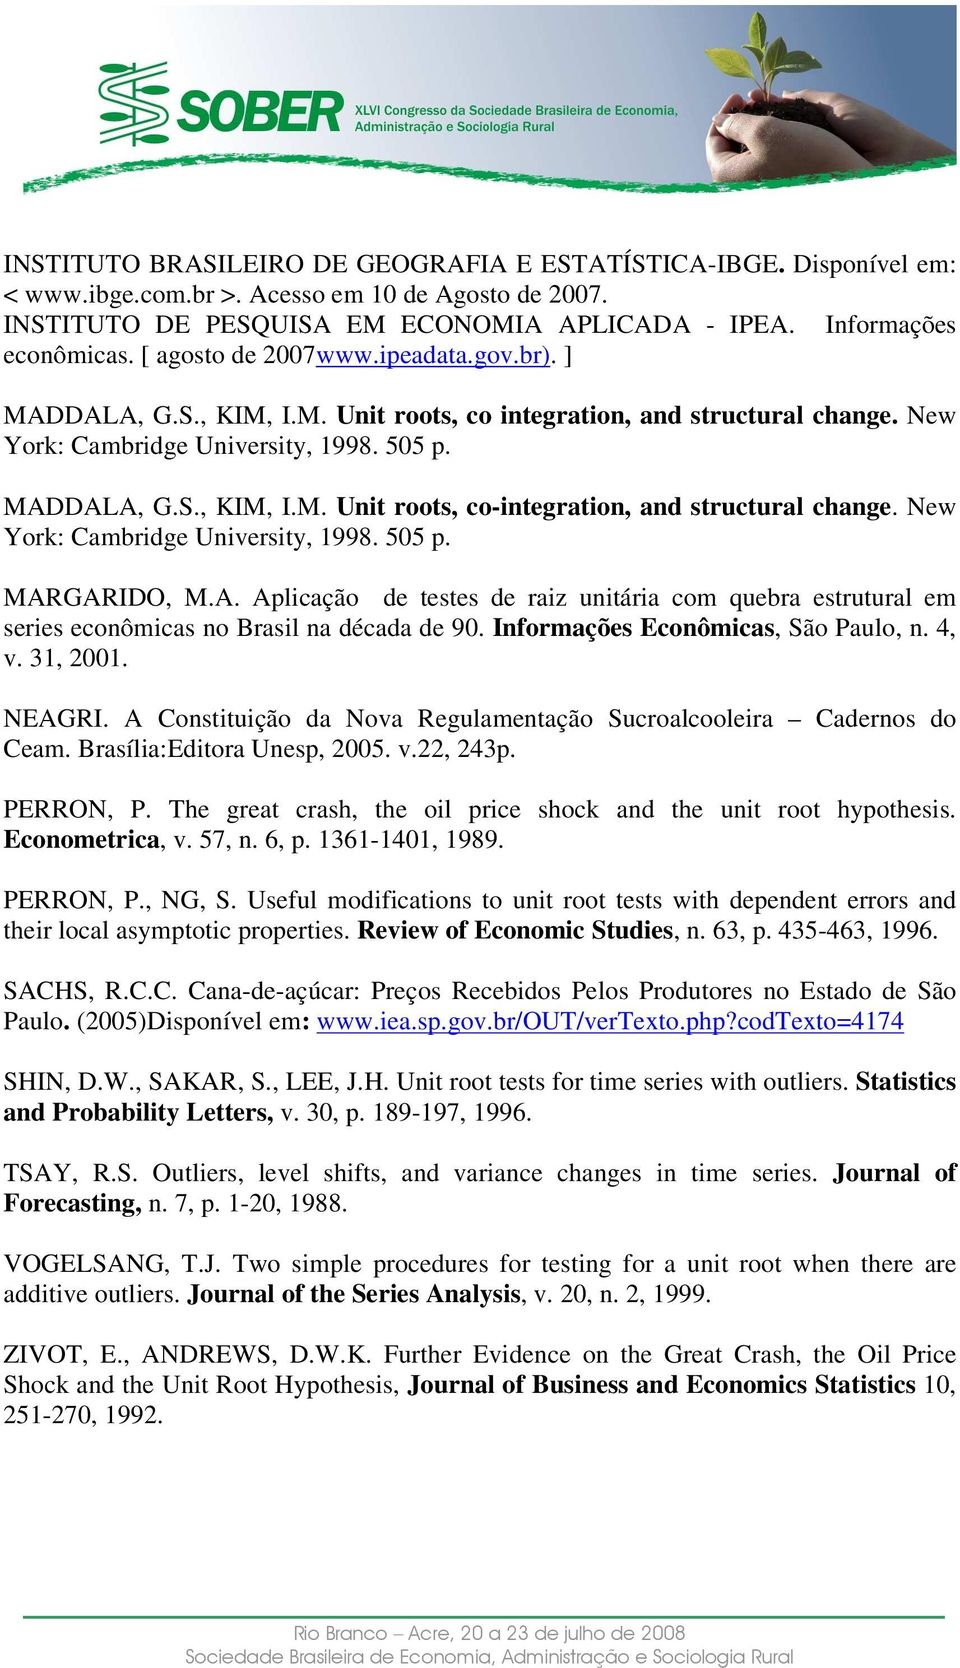 New York: Cambridge Universiy, 1998. 505 p. MARGARIDO, M.A. Aplicação de eses de raiz uniária com quebra esruural em series econômicas no Brasil na década de 90. Informações Econômicas, São Paulo, n.